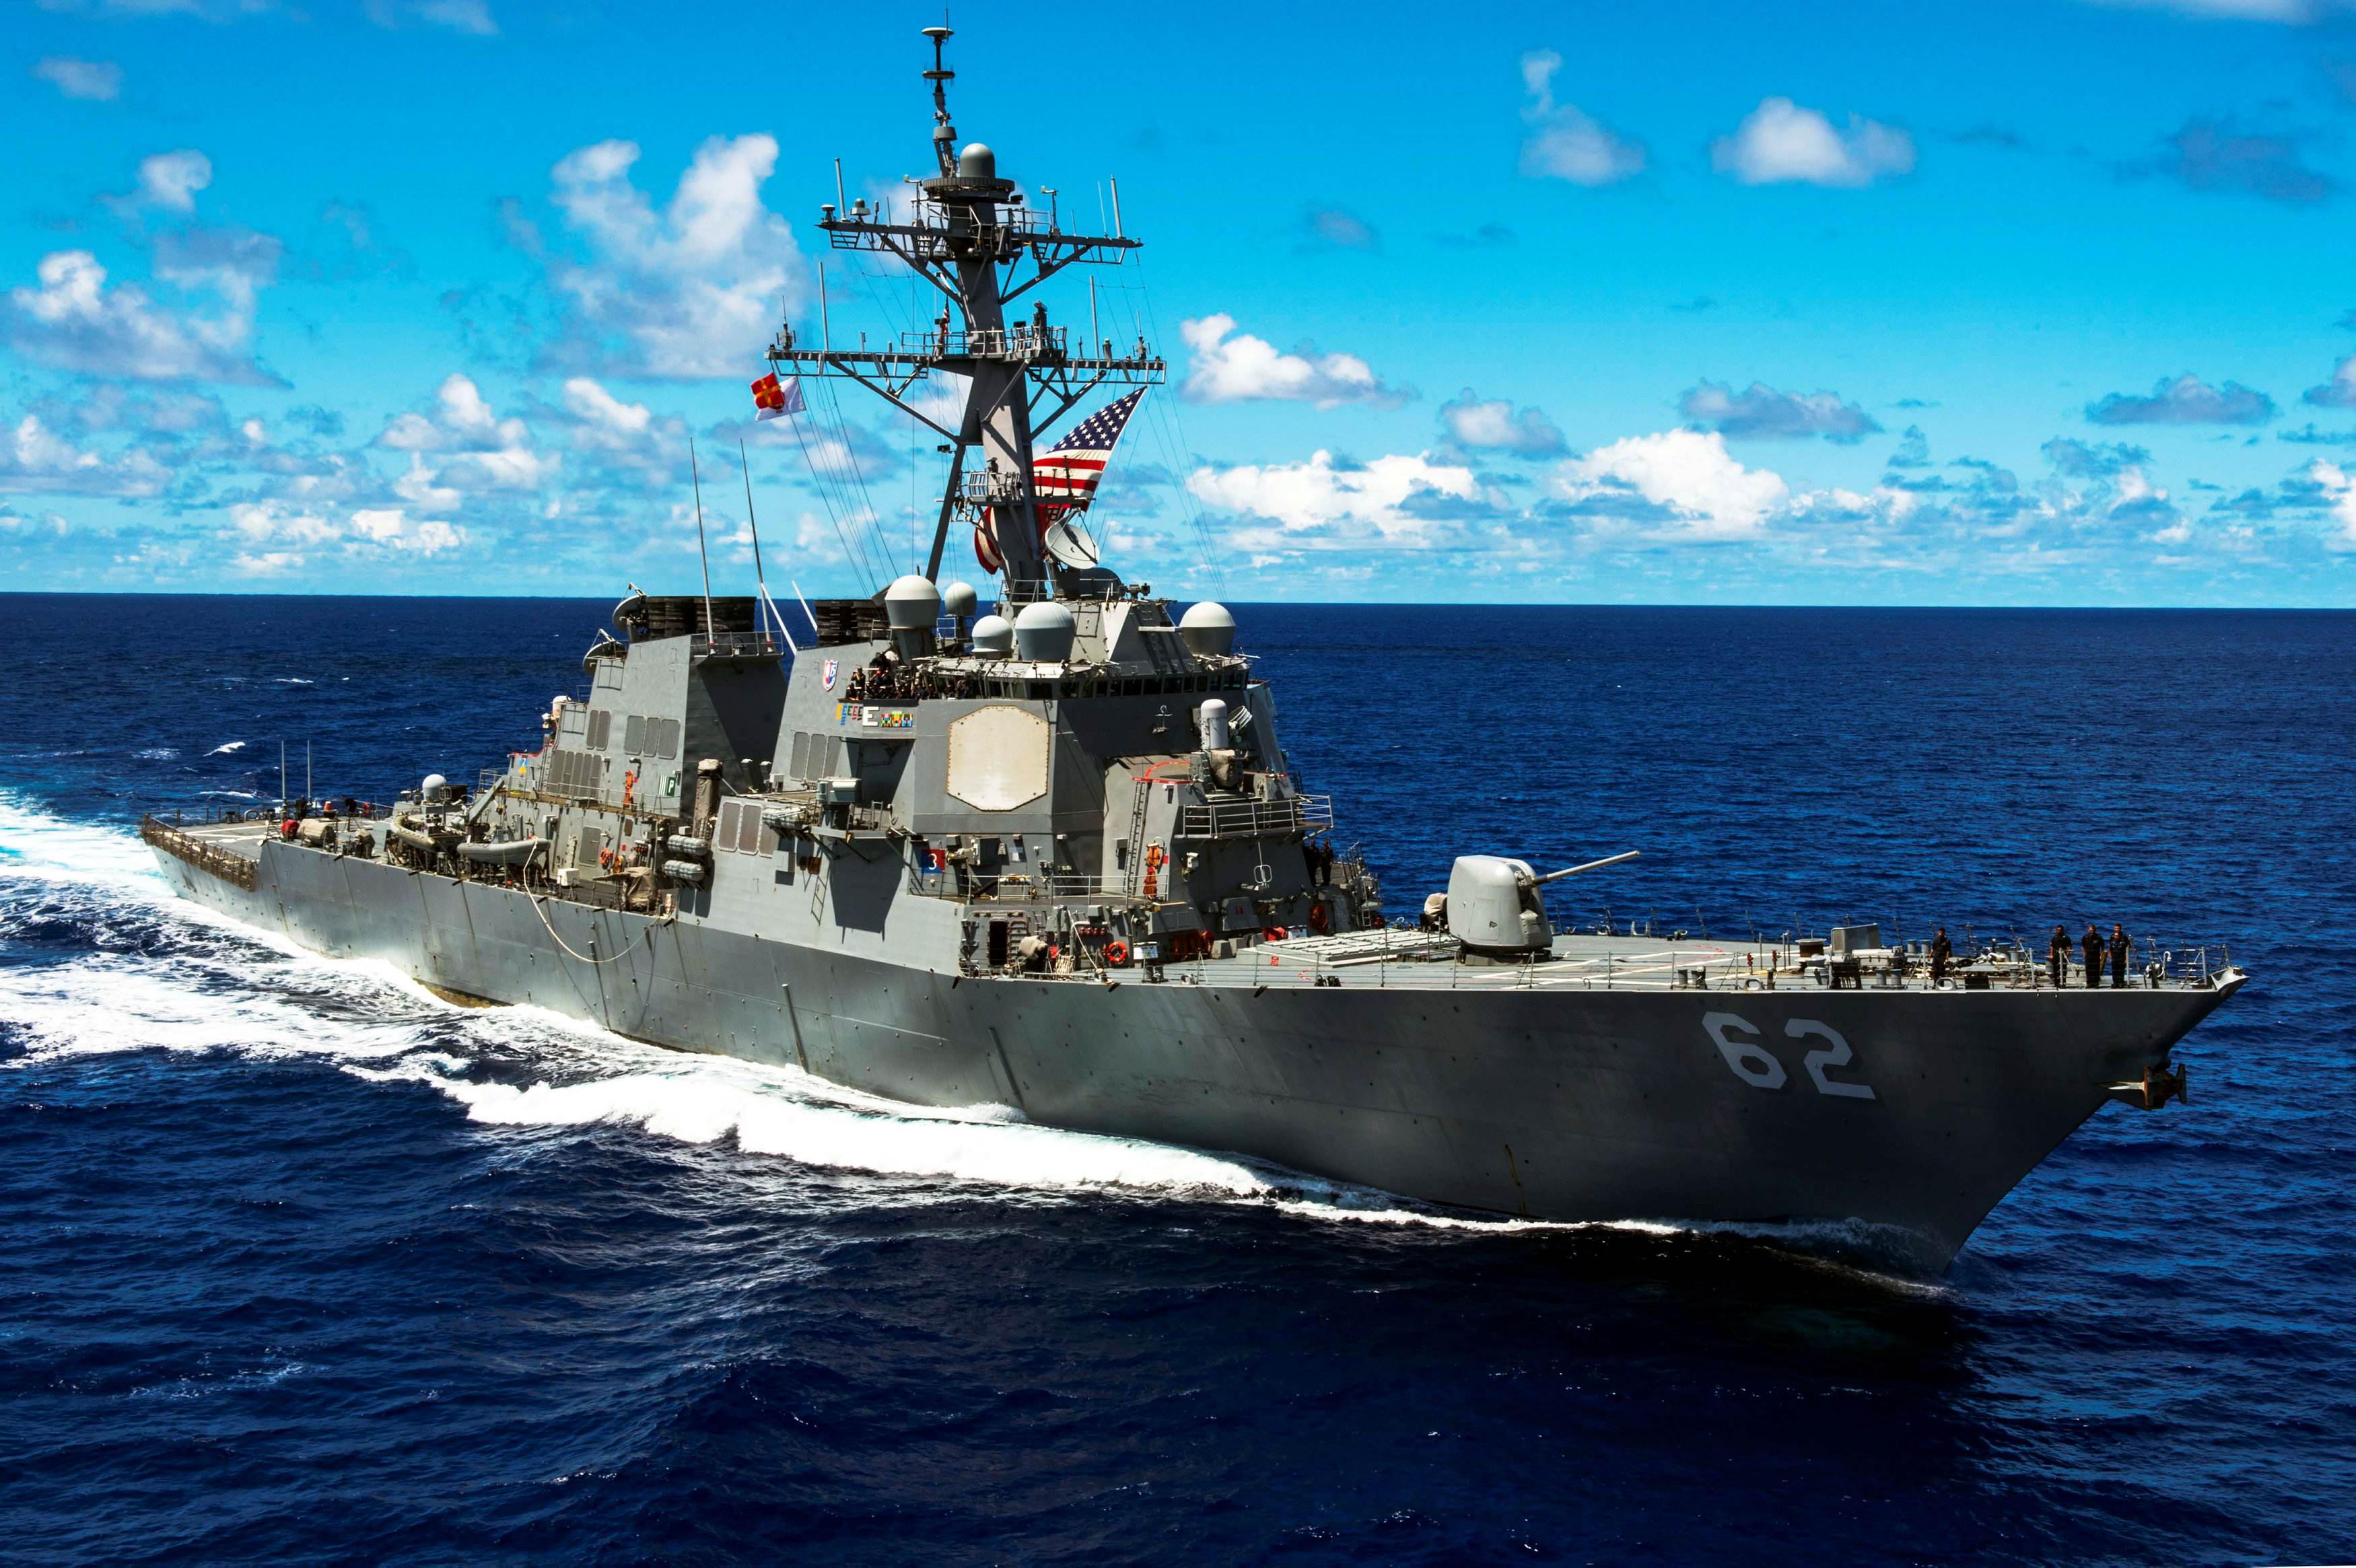 美国海军舰艇一览表图片